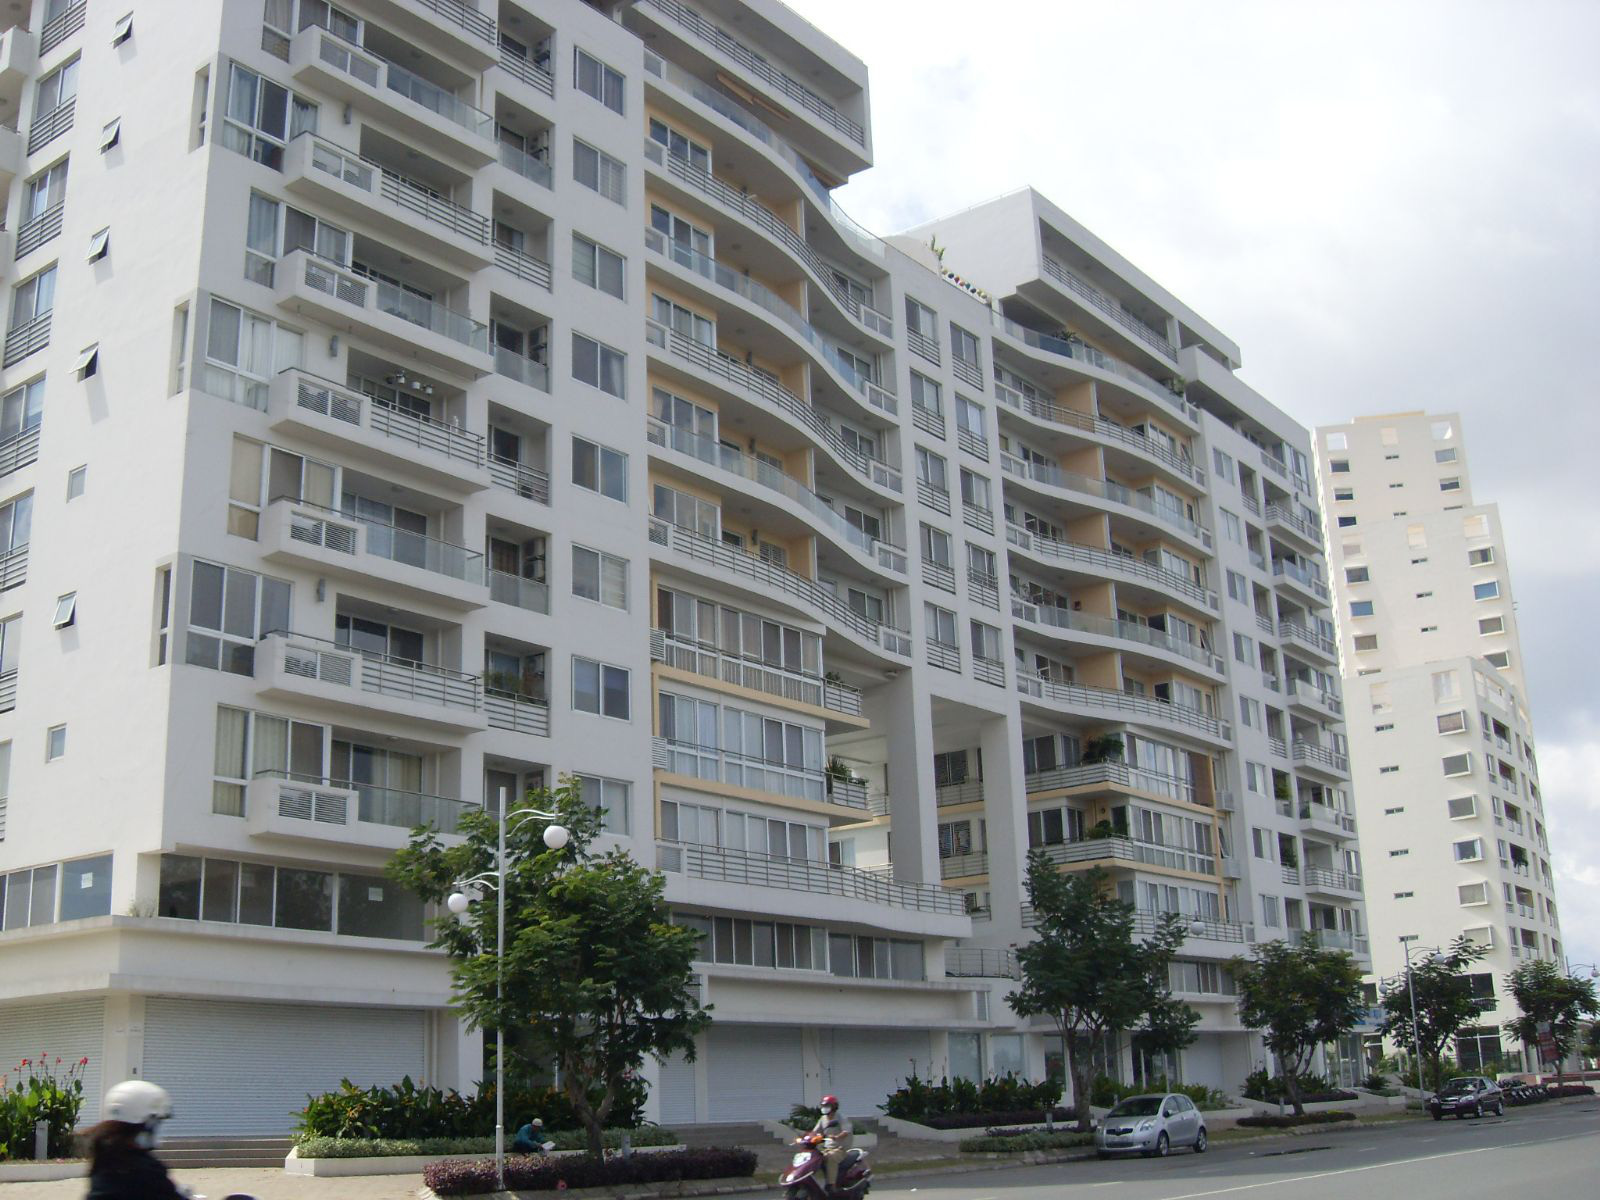 Hiệp hội BĐS Tp.HCM ủng hộ xây dựng căn hộ 25m2 bởi nhiều người chưa có nhà hoặc sống trong căn nhà chật hẹp - Ảnh 2.